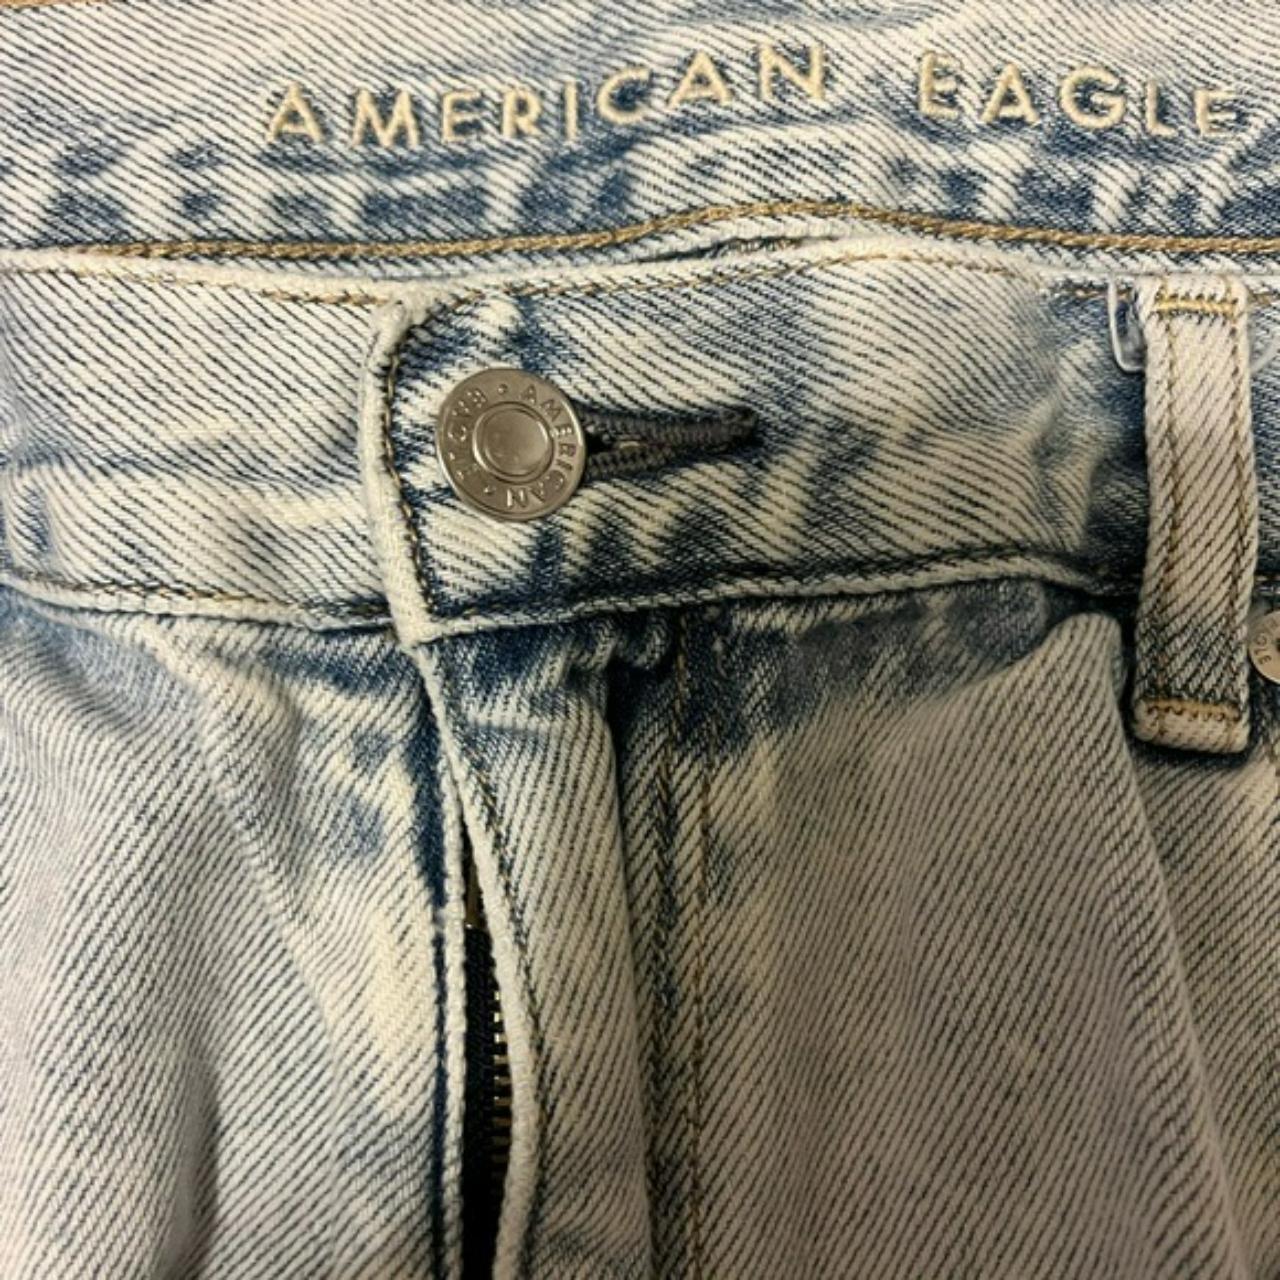 American Eagle 90's Boyfriend Jean Shorts Button Fly... - Depop